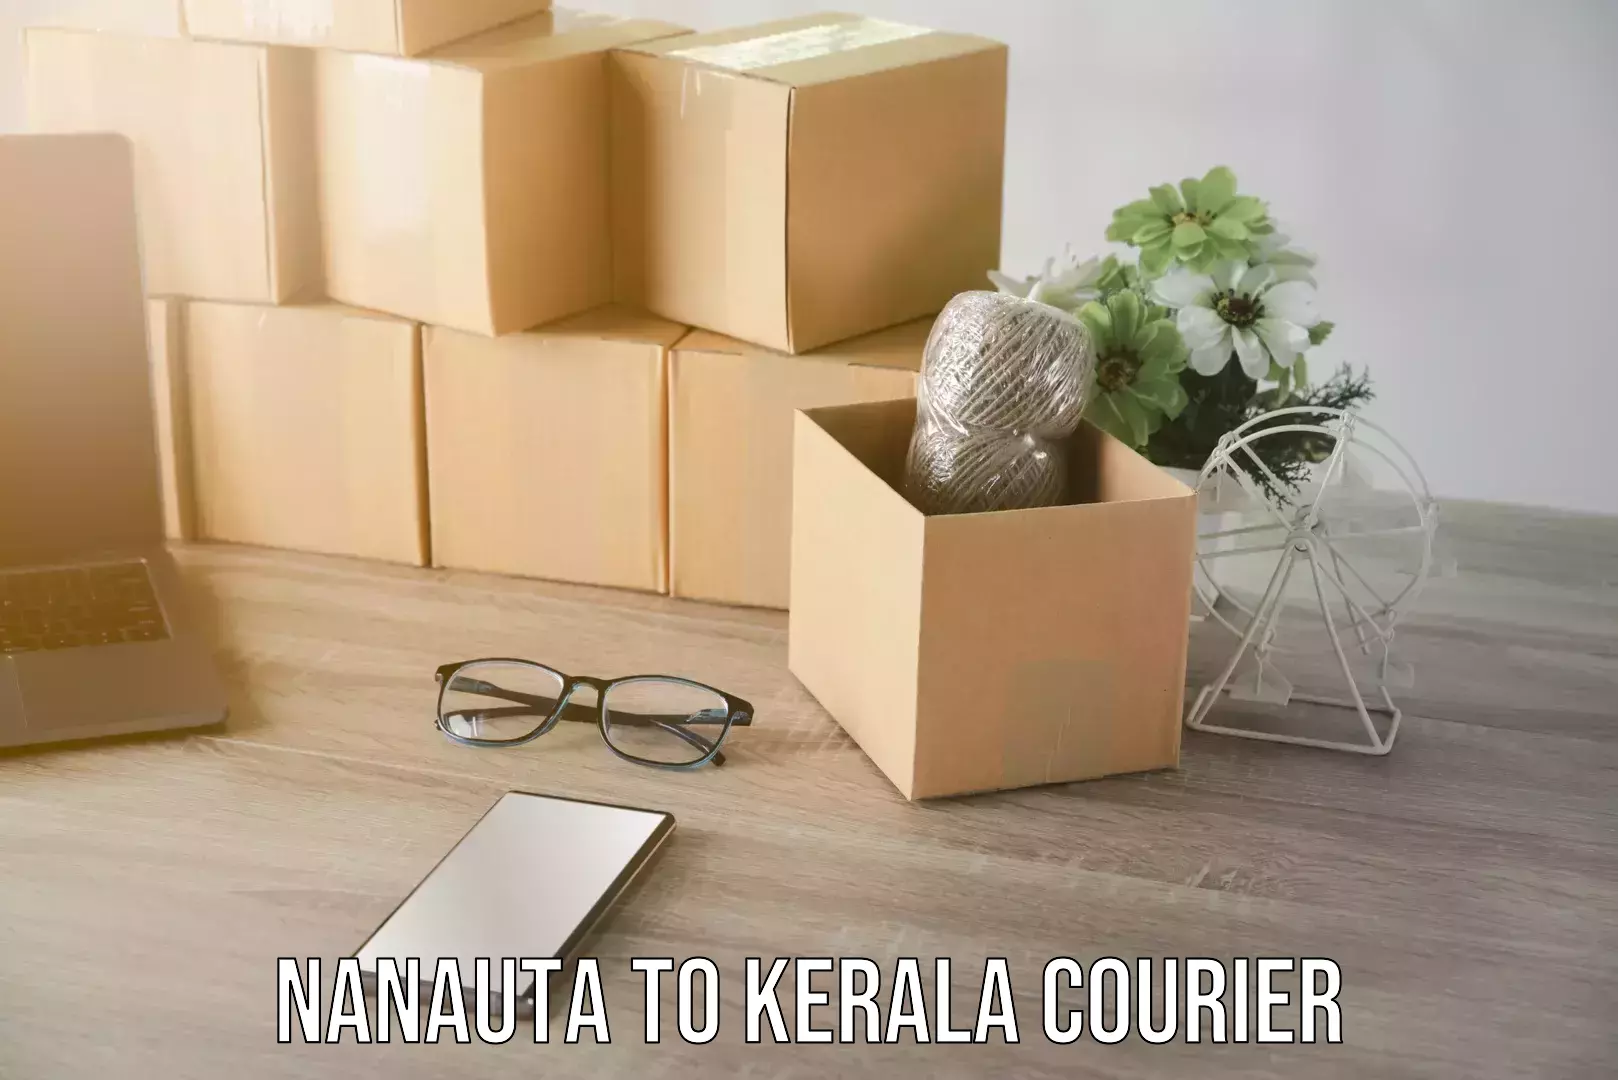 Household moving strategies Nanauta to Kerala